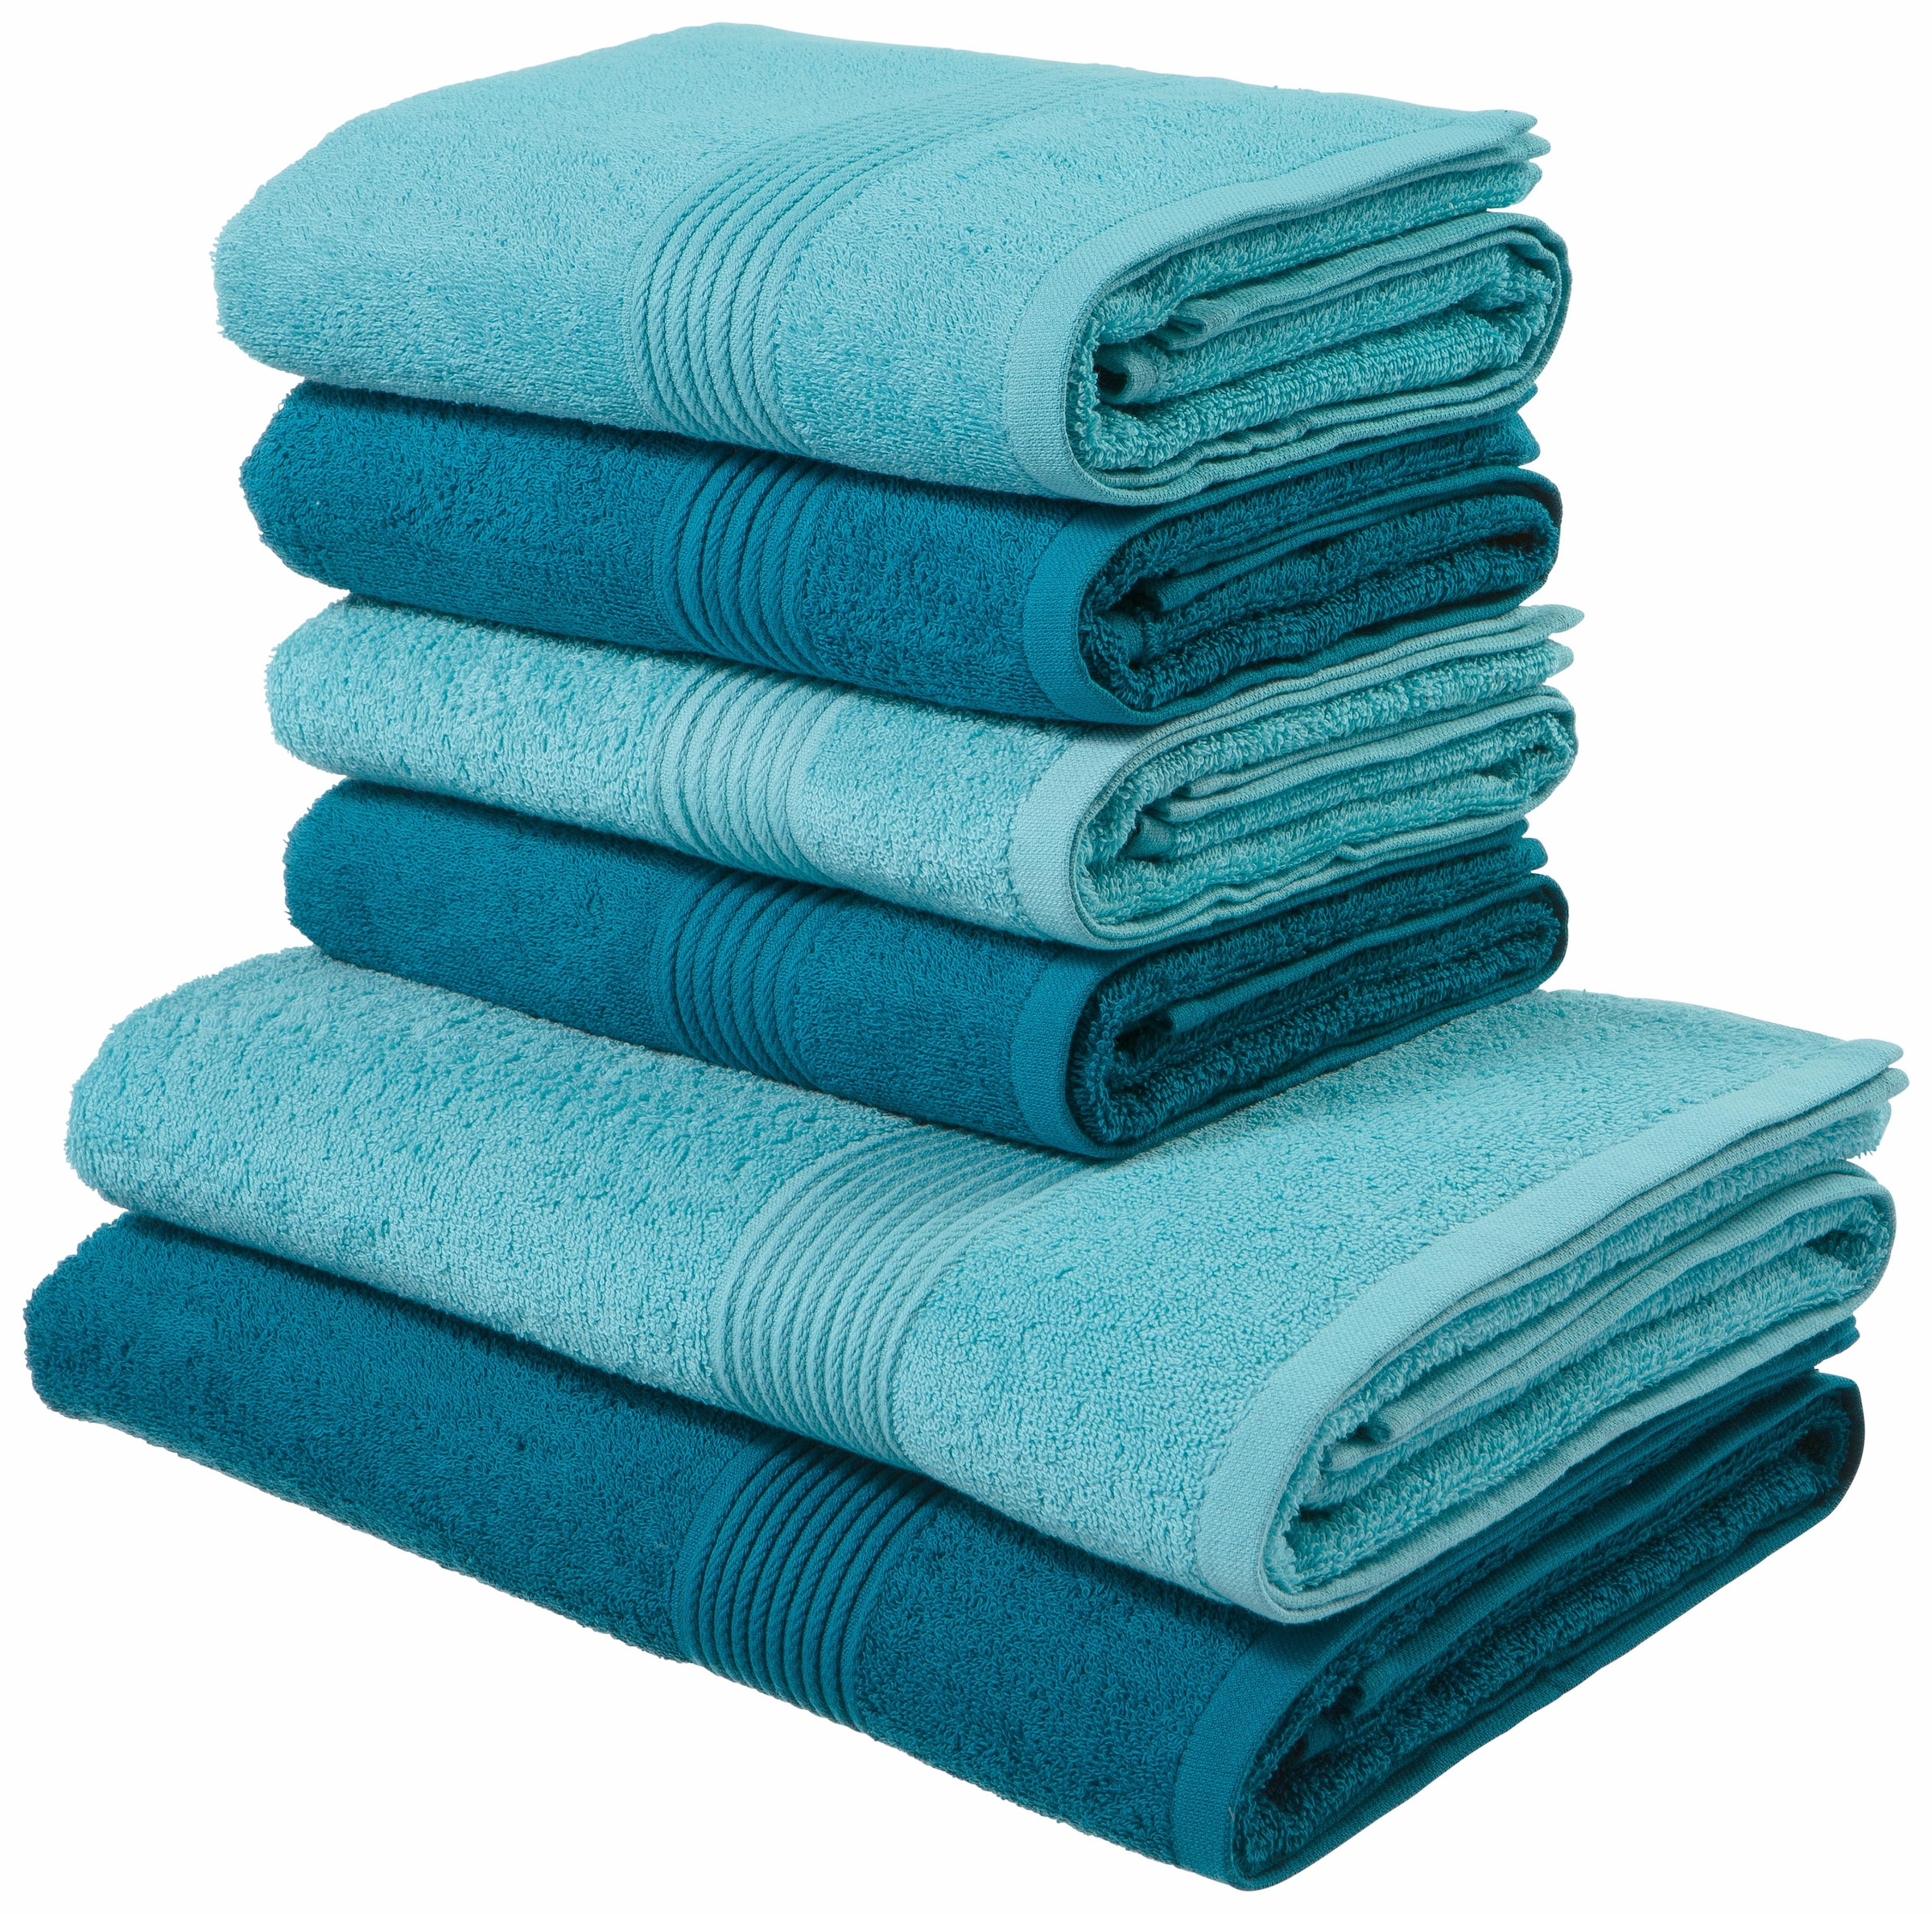 Handtuch-Sets online kaufen bei liefern – Wir Quelle